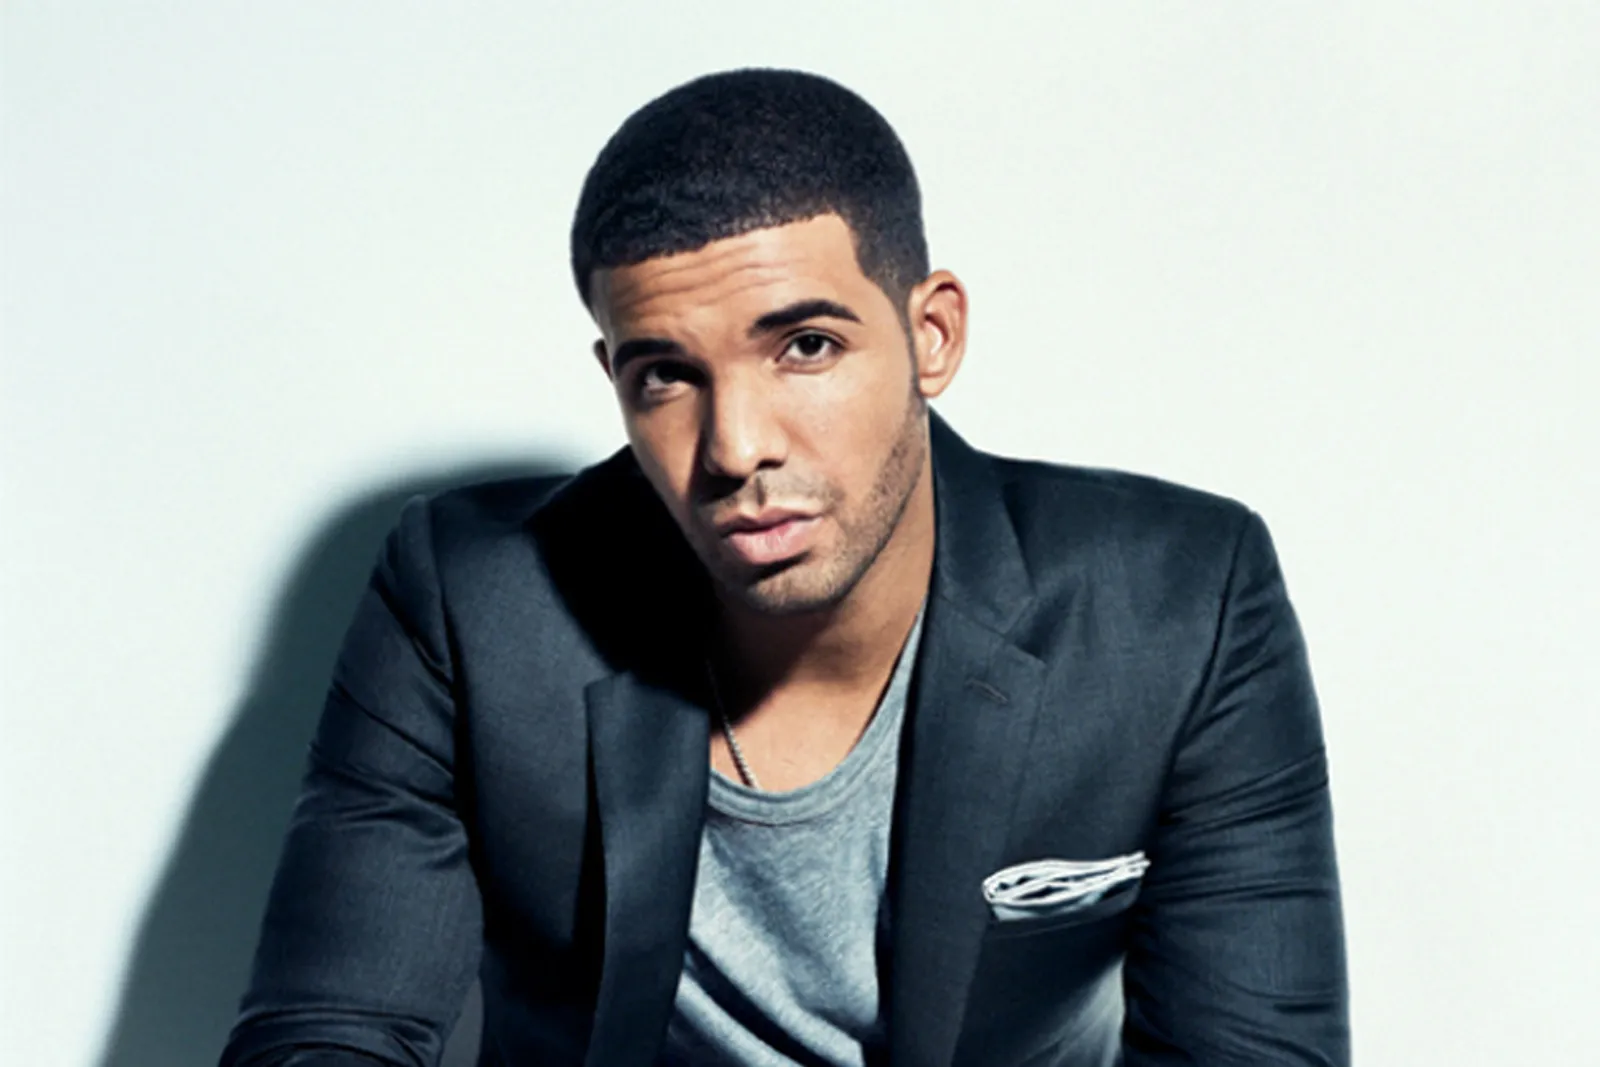 Inilah 6 Fakta Menarik dari Rapper Terkenal, Drake yang Perlu Kamu Ketahui